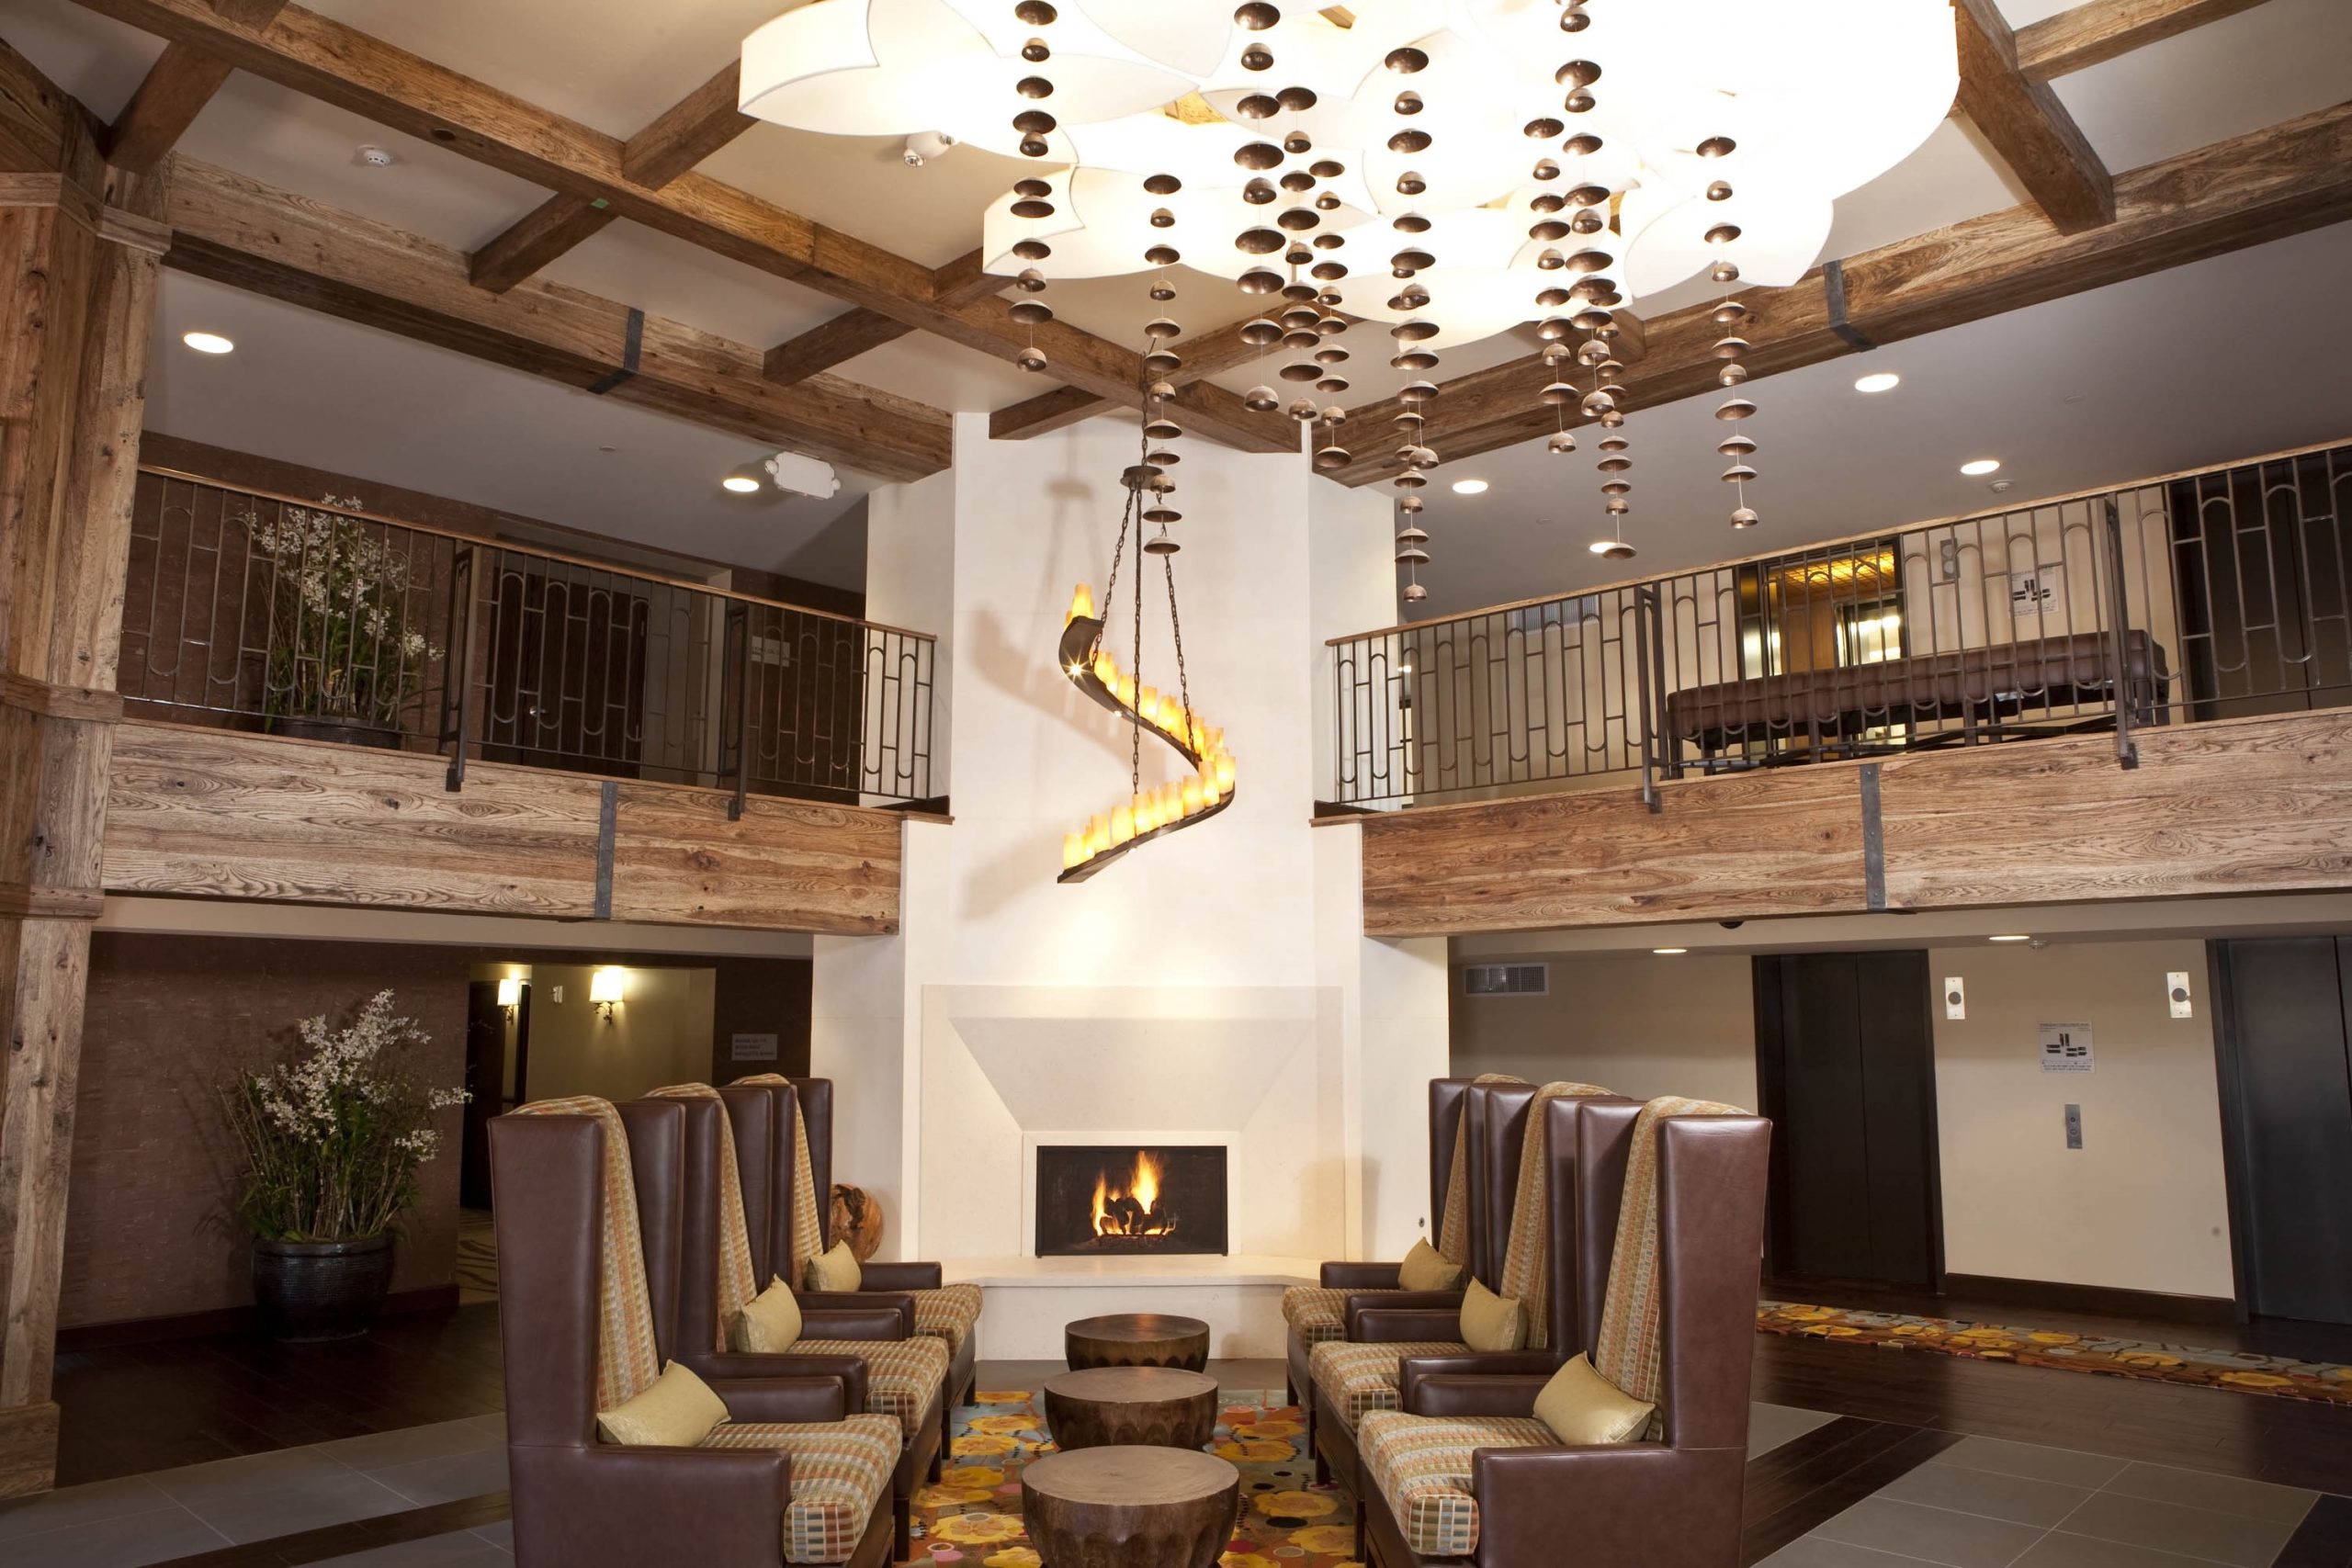 Chumash hotels, restaurants earn AAA Four Diamond Award